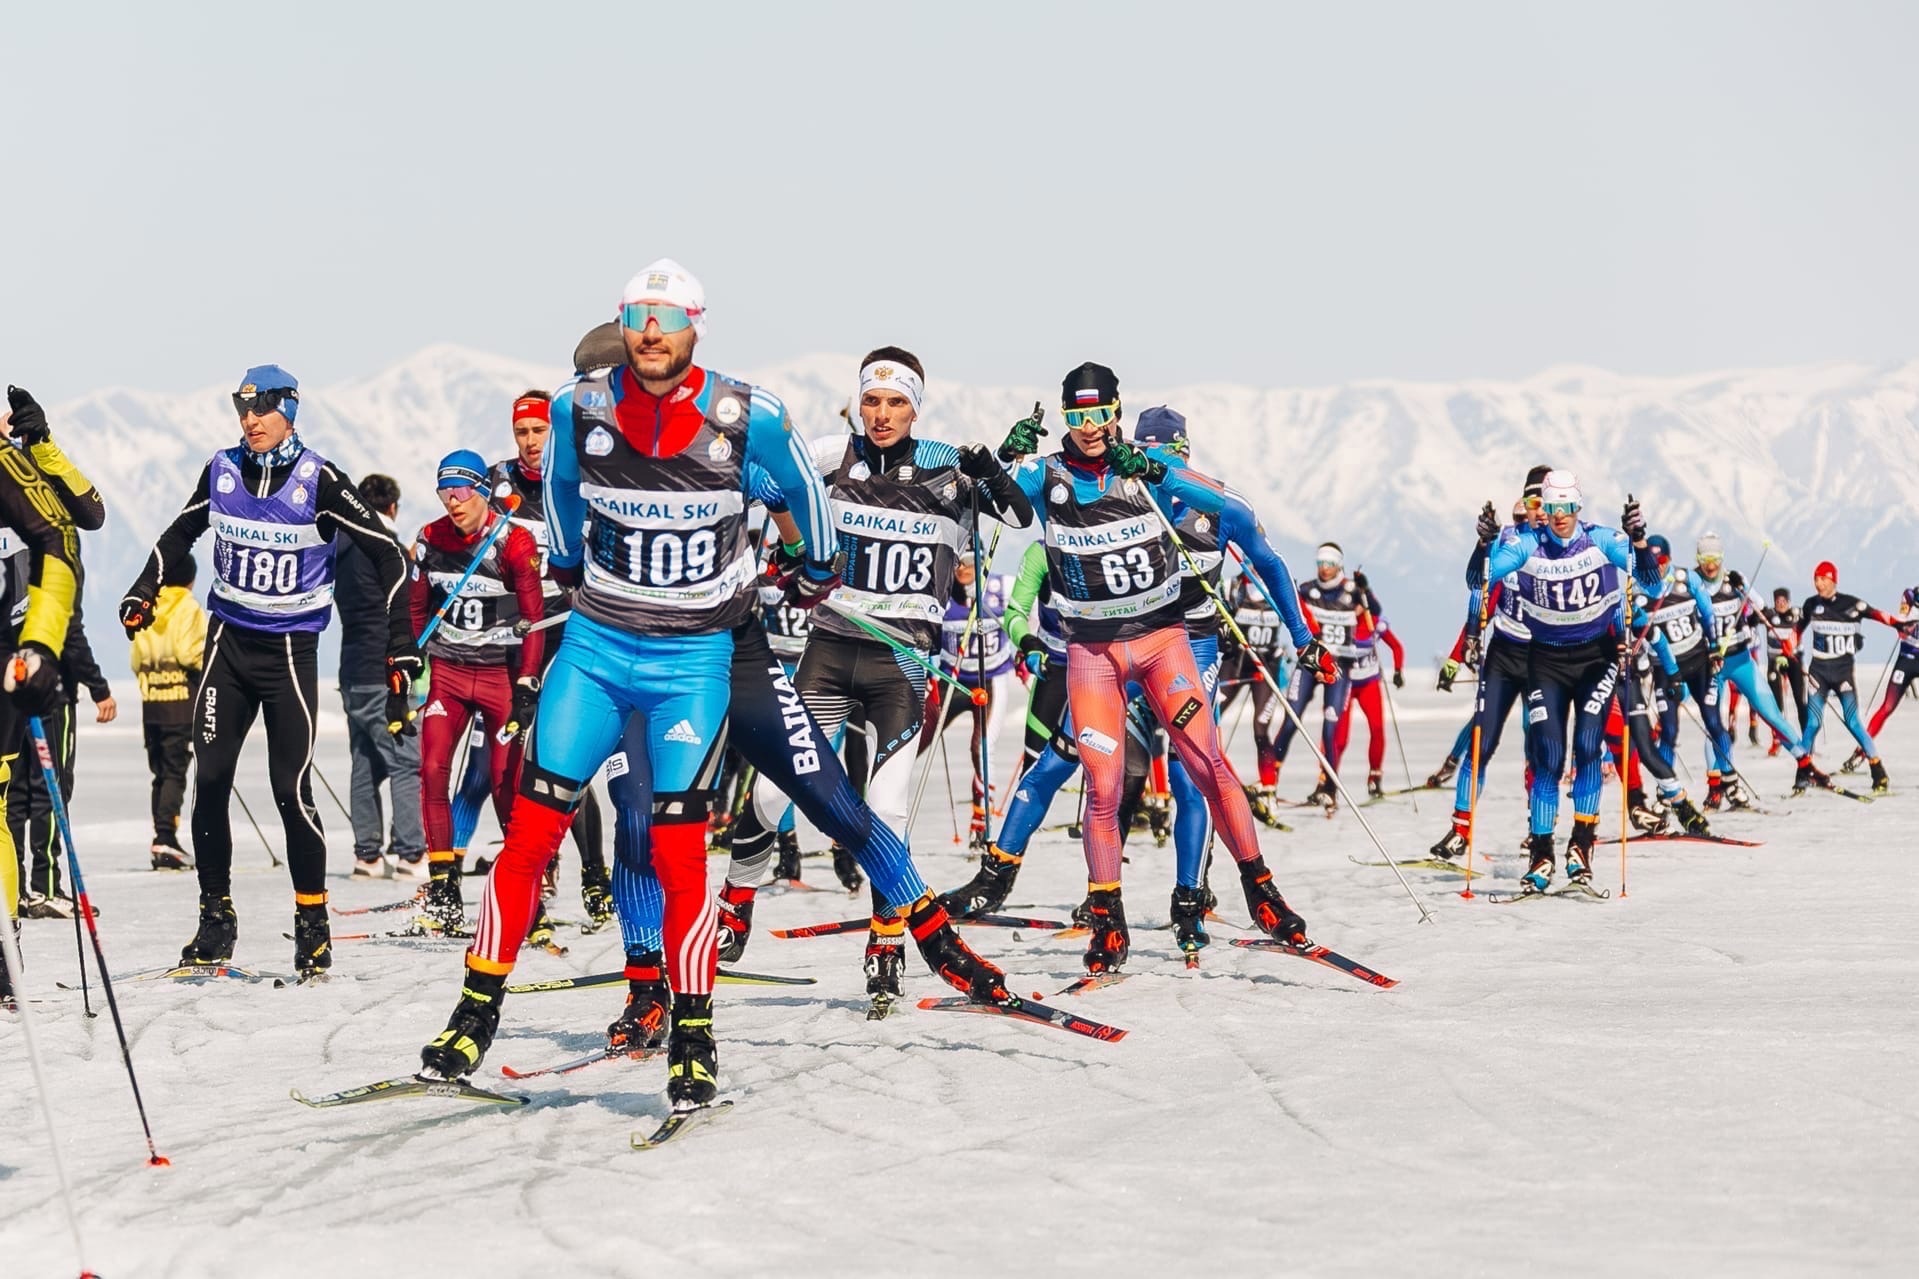 Фото В министерстве спорта Бурятии опубликовали программу Байкальского лыжного марафона (6+)